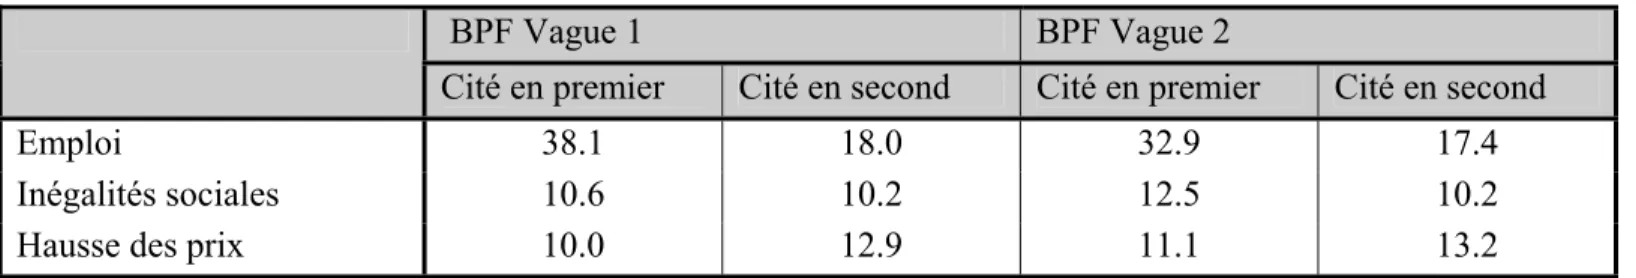 Tableau 11 : Les trois problèmes préoccupant le plus les Français (% en colonnes) 